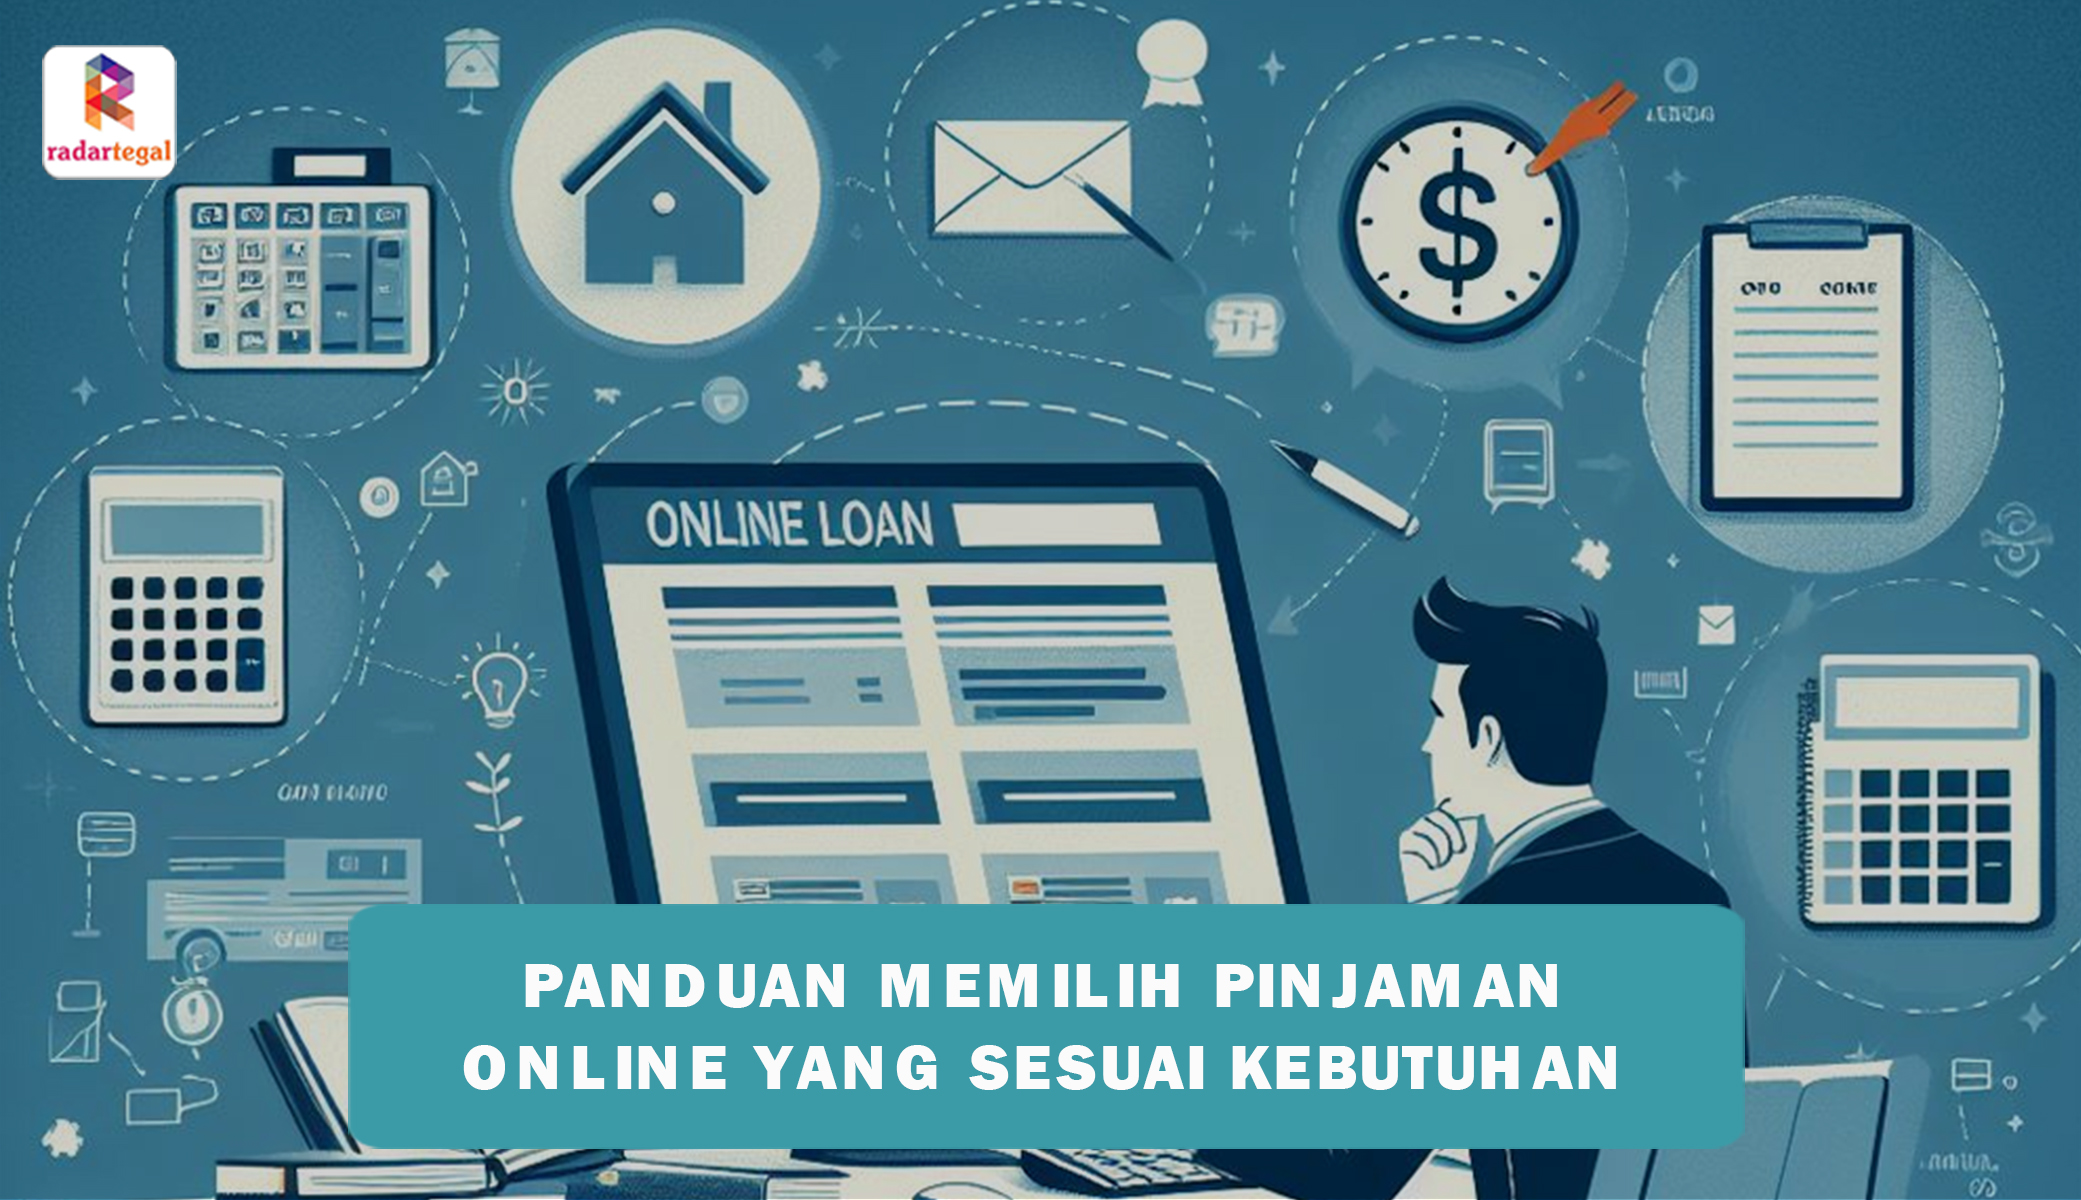 Panduan Praktis Memilih Pinjaman Online yang Sesuai dengan Kebutuhan, Cara Terbaik Menghindari Beban Hutang